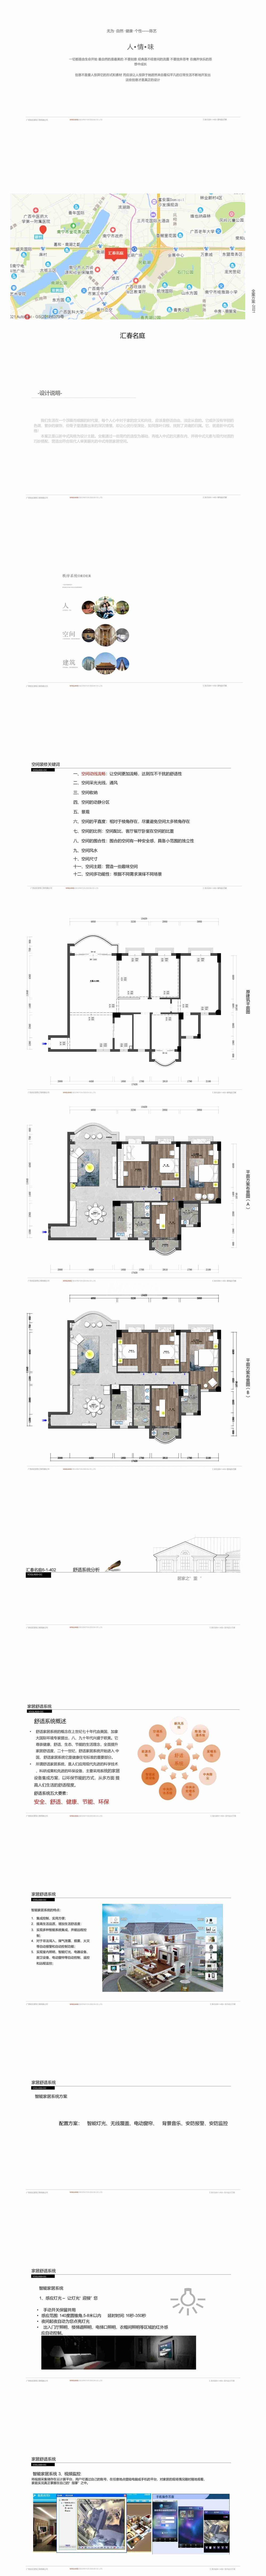 匯春名庭6-1-402室151㎡戶型設計方案解析